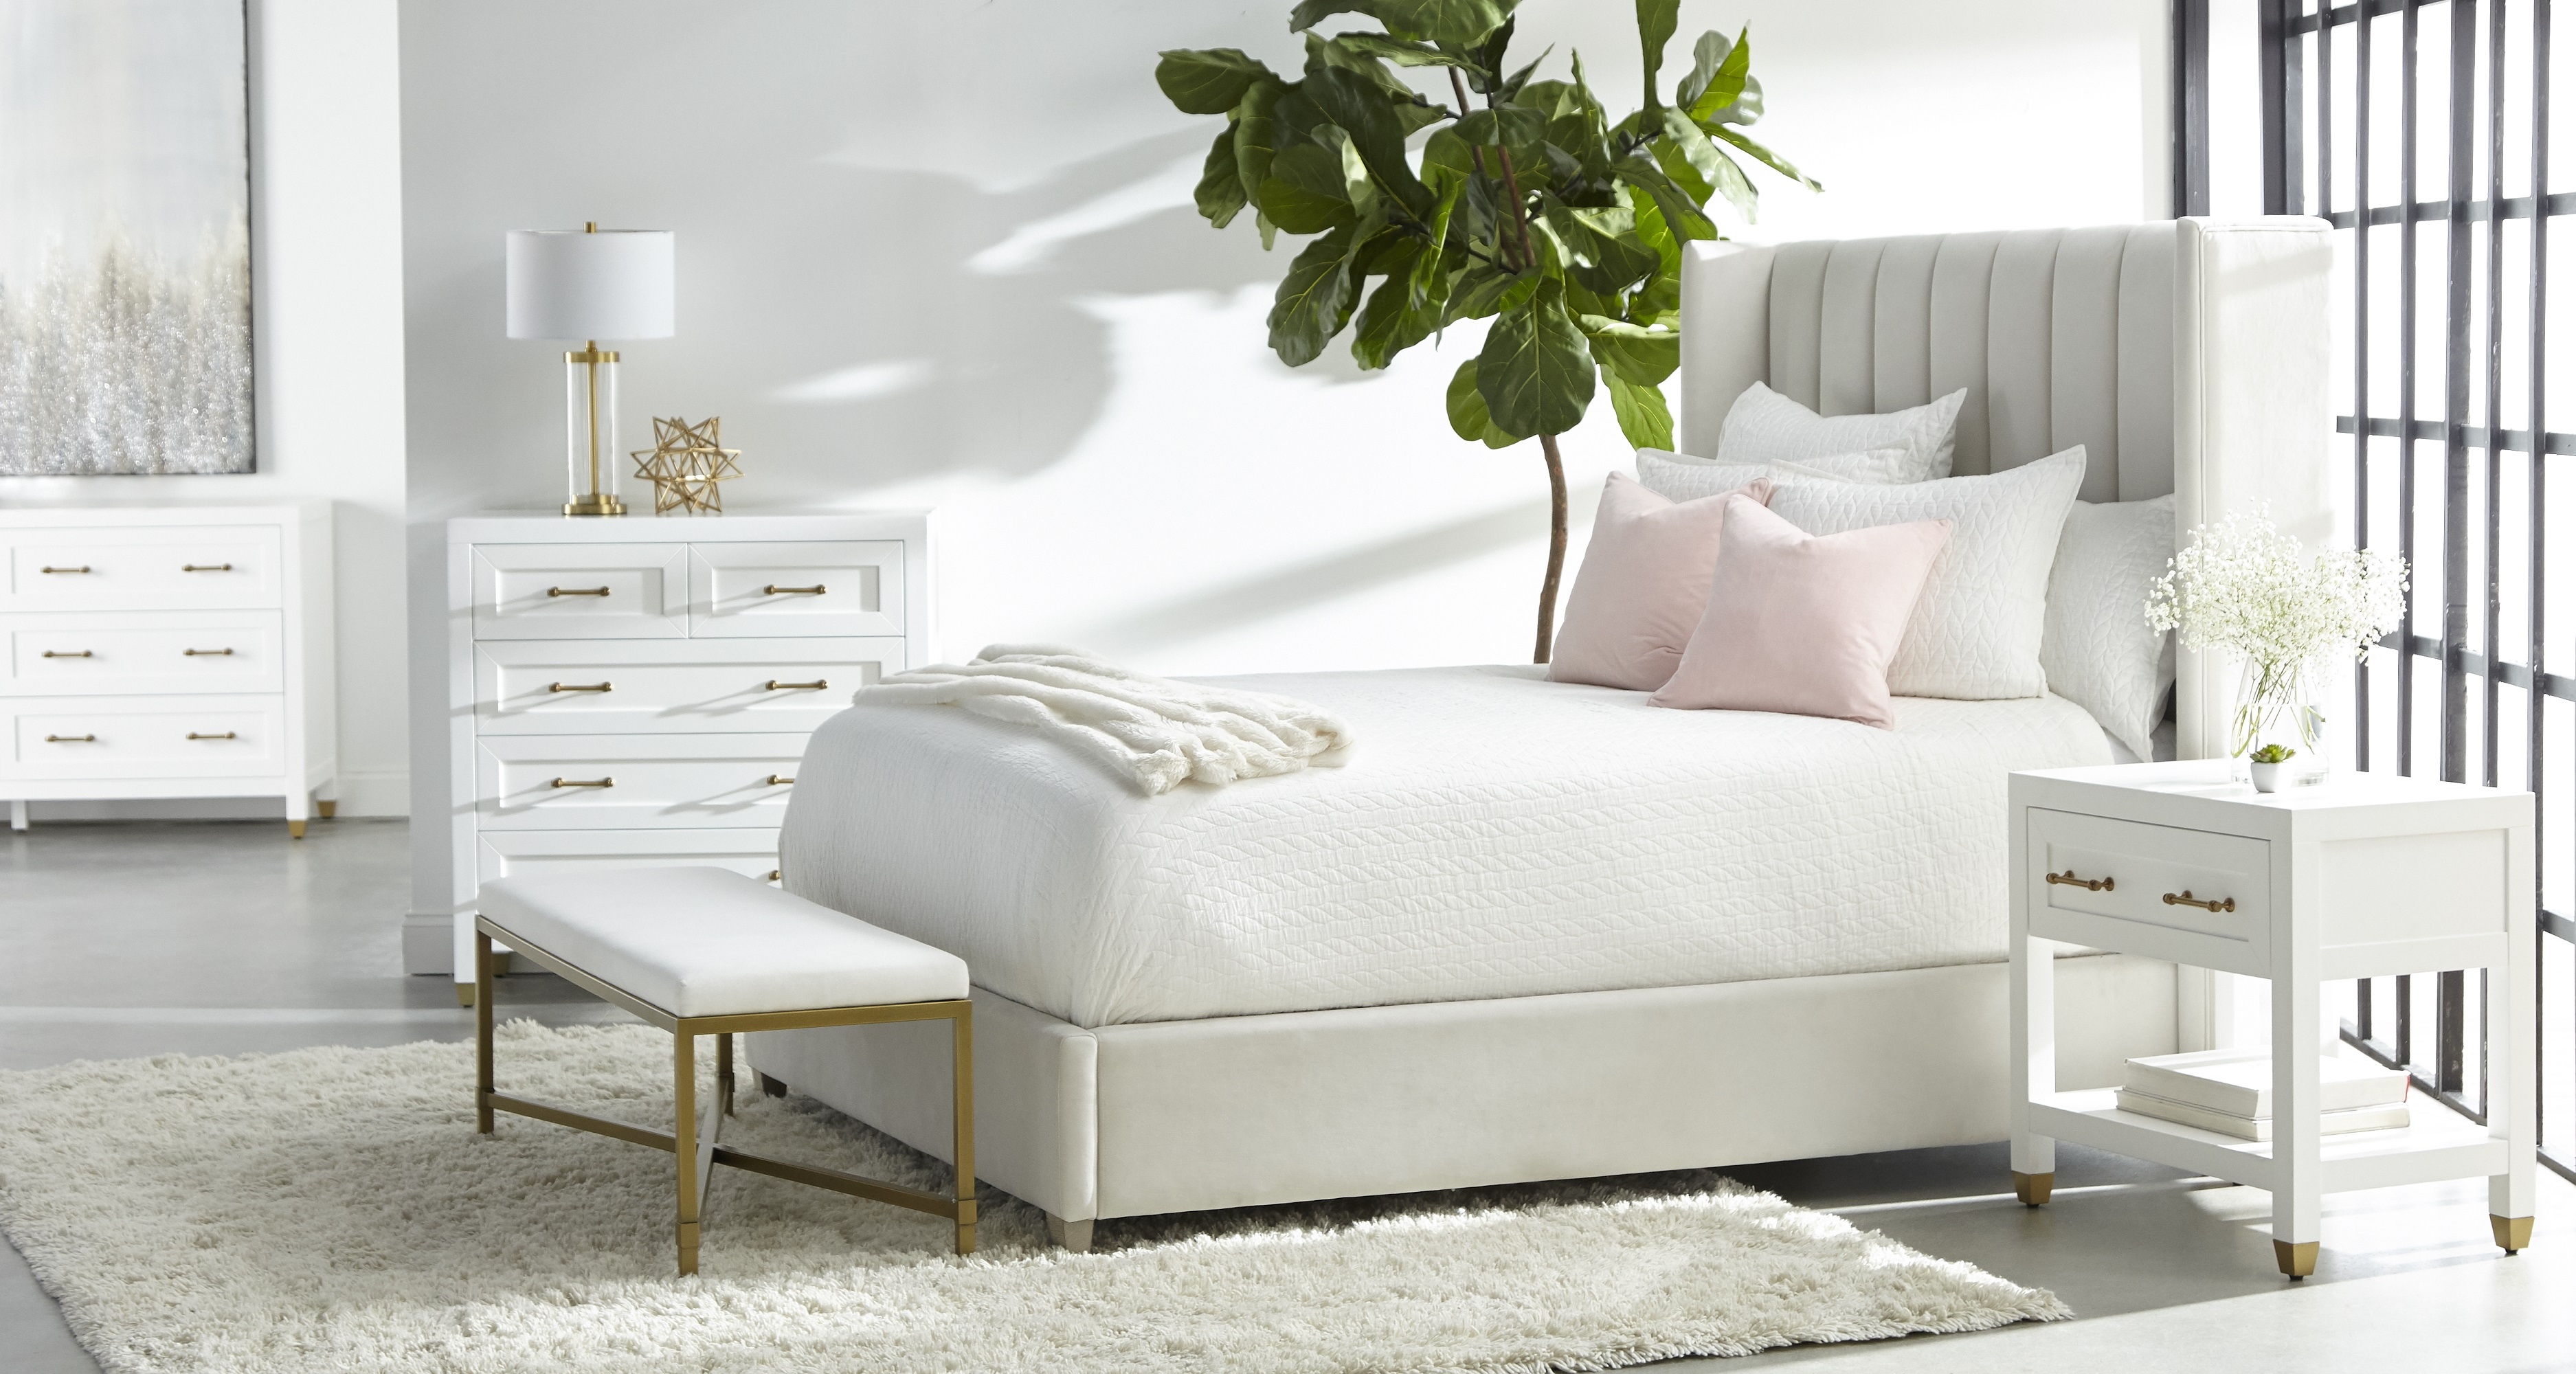 Chandler Bed, Cream, Queen - Image 2